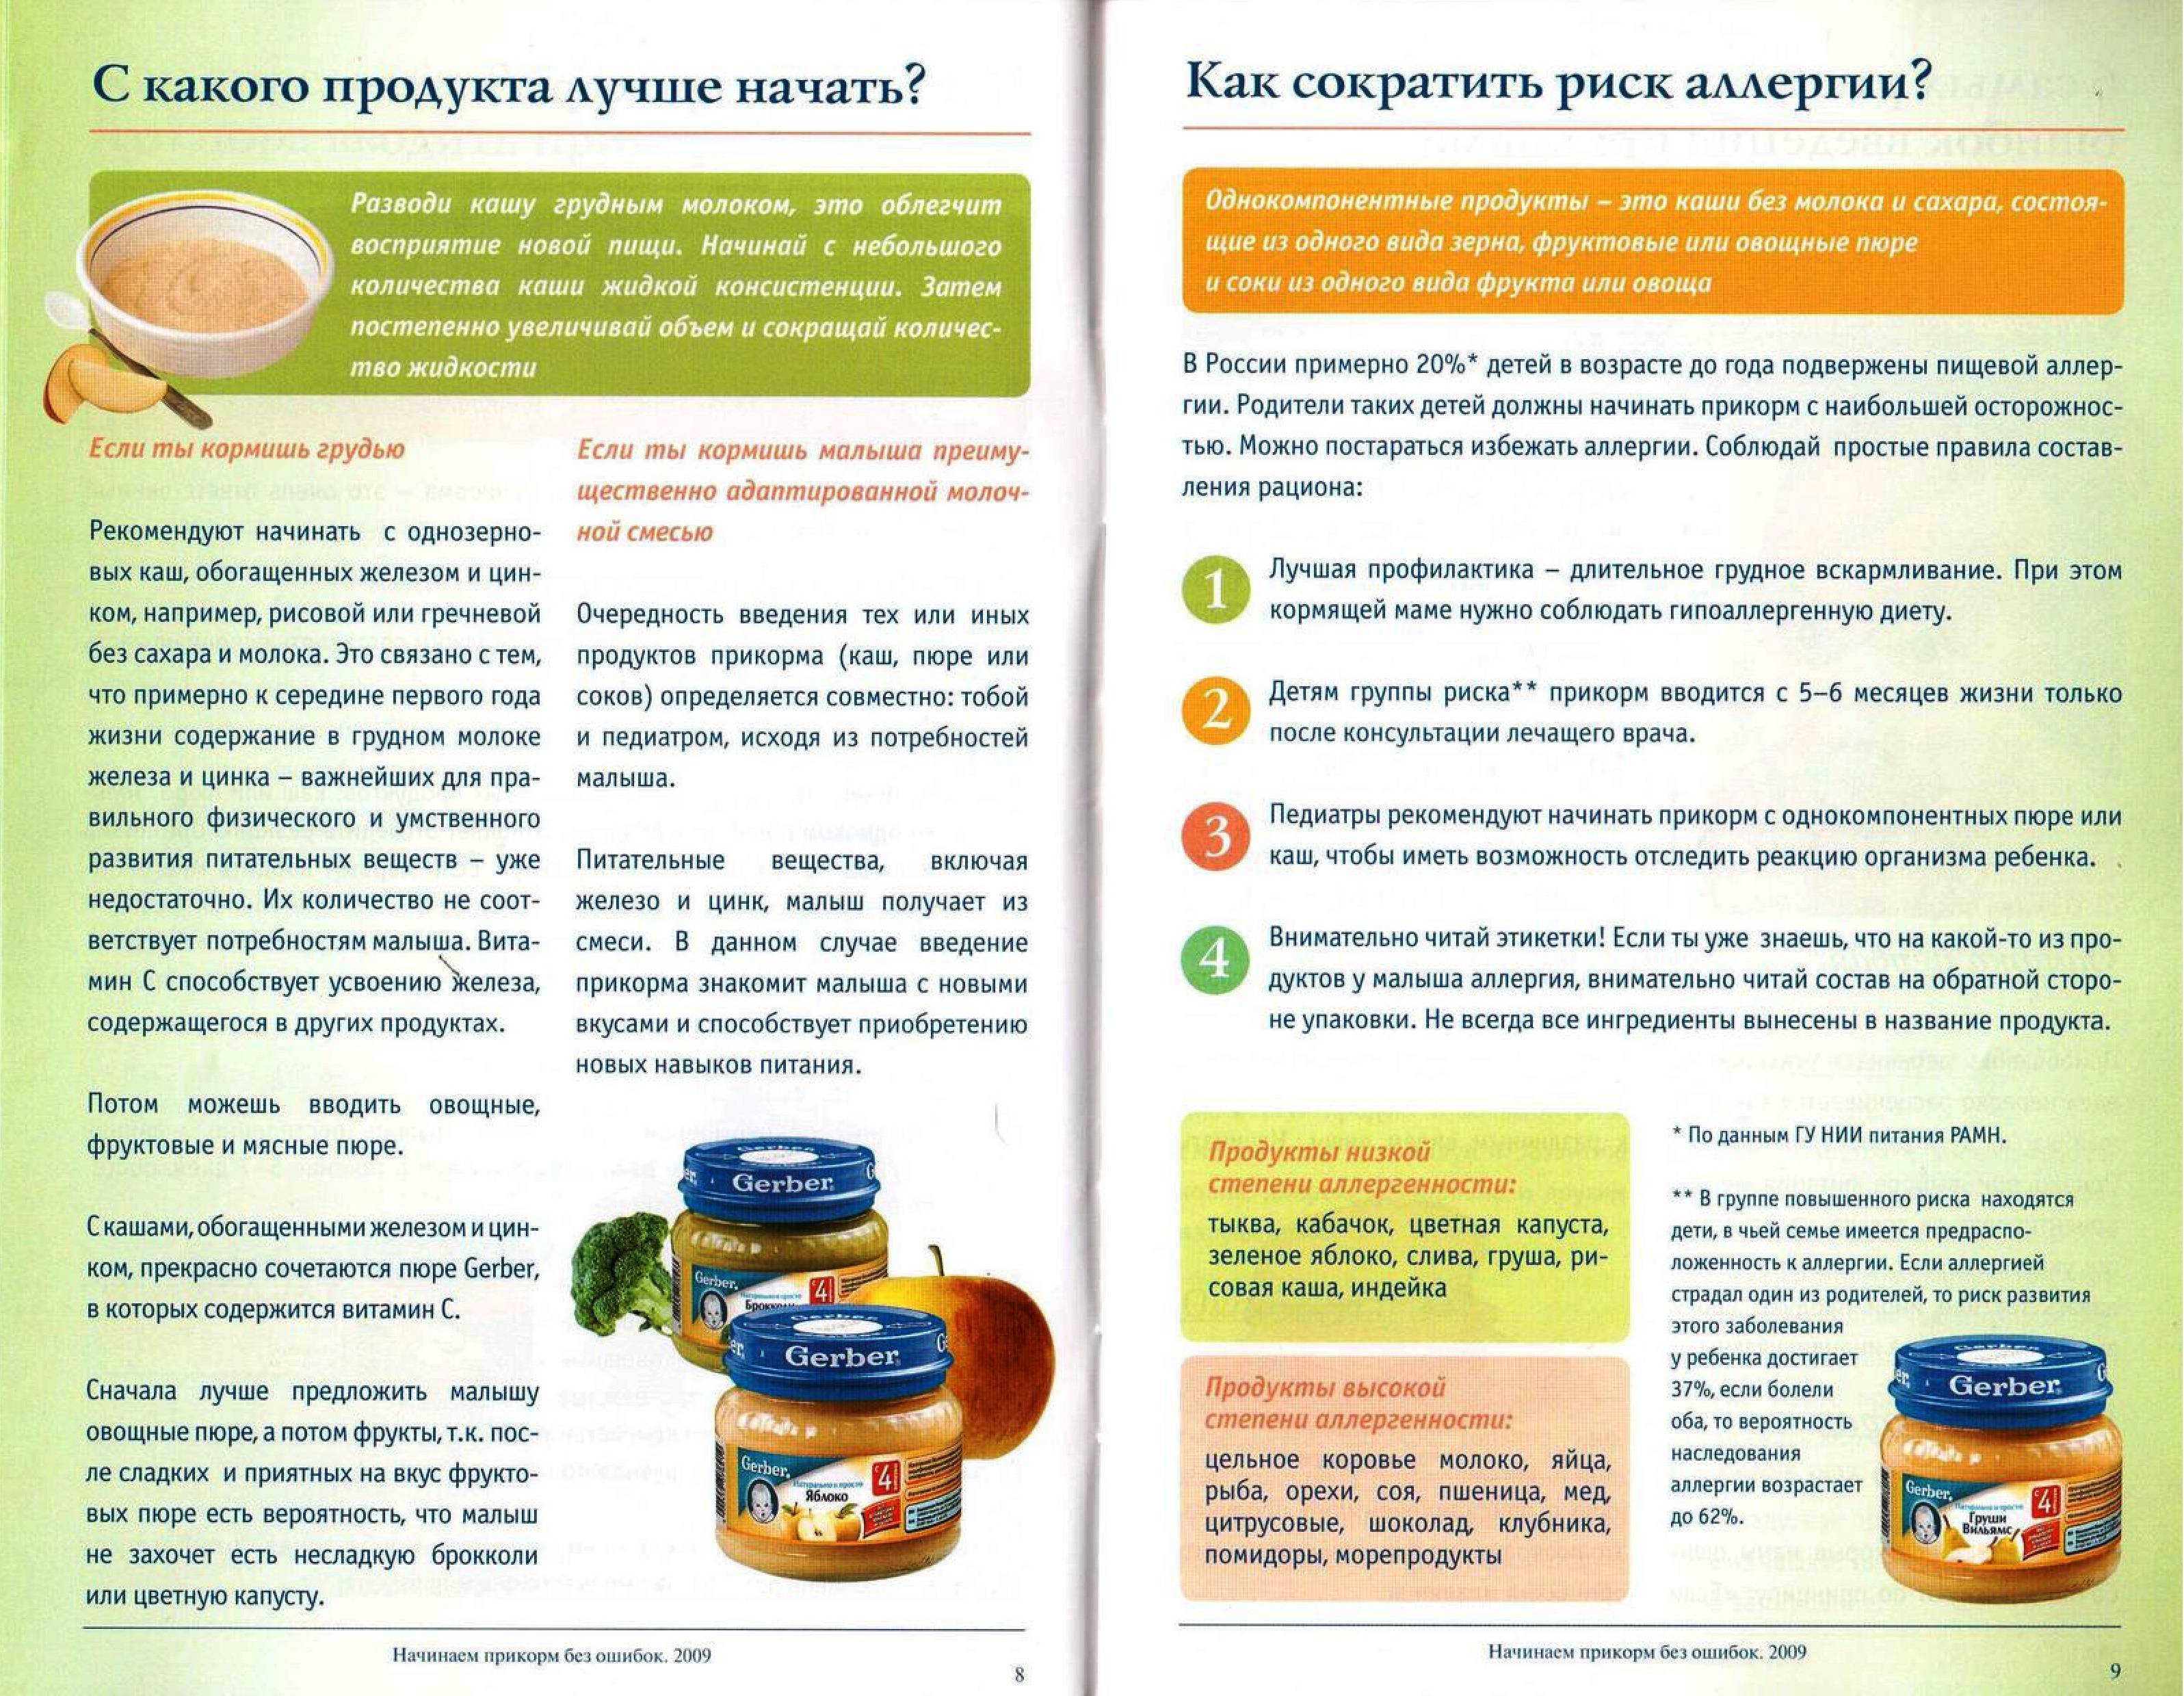 Детское мясное пюре: обзор российских производителей